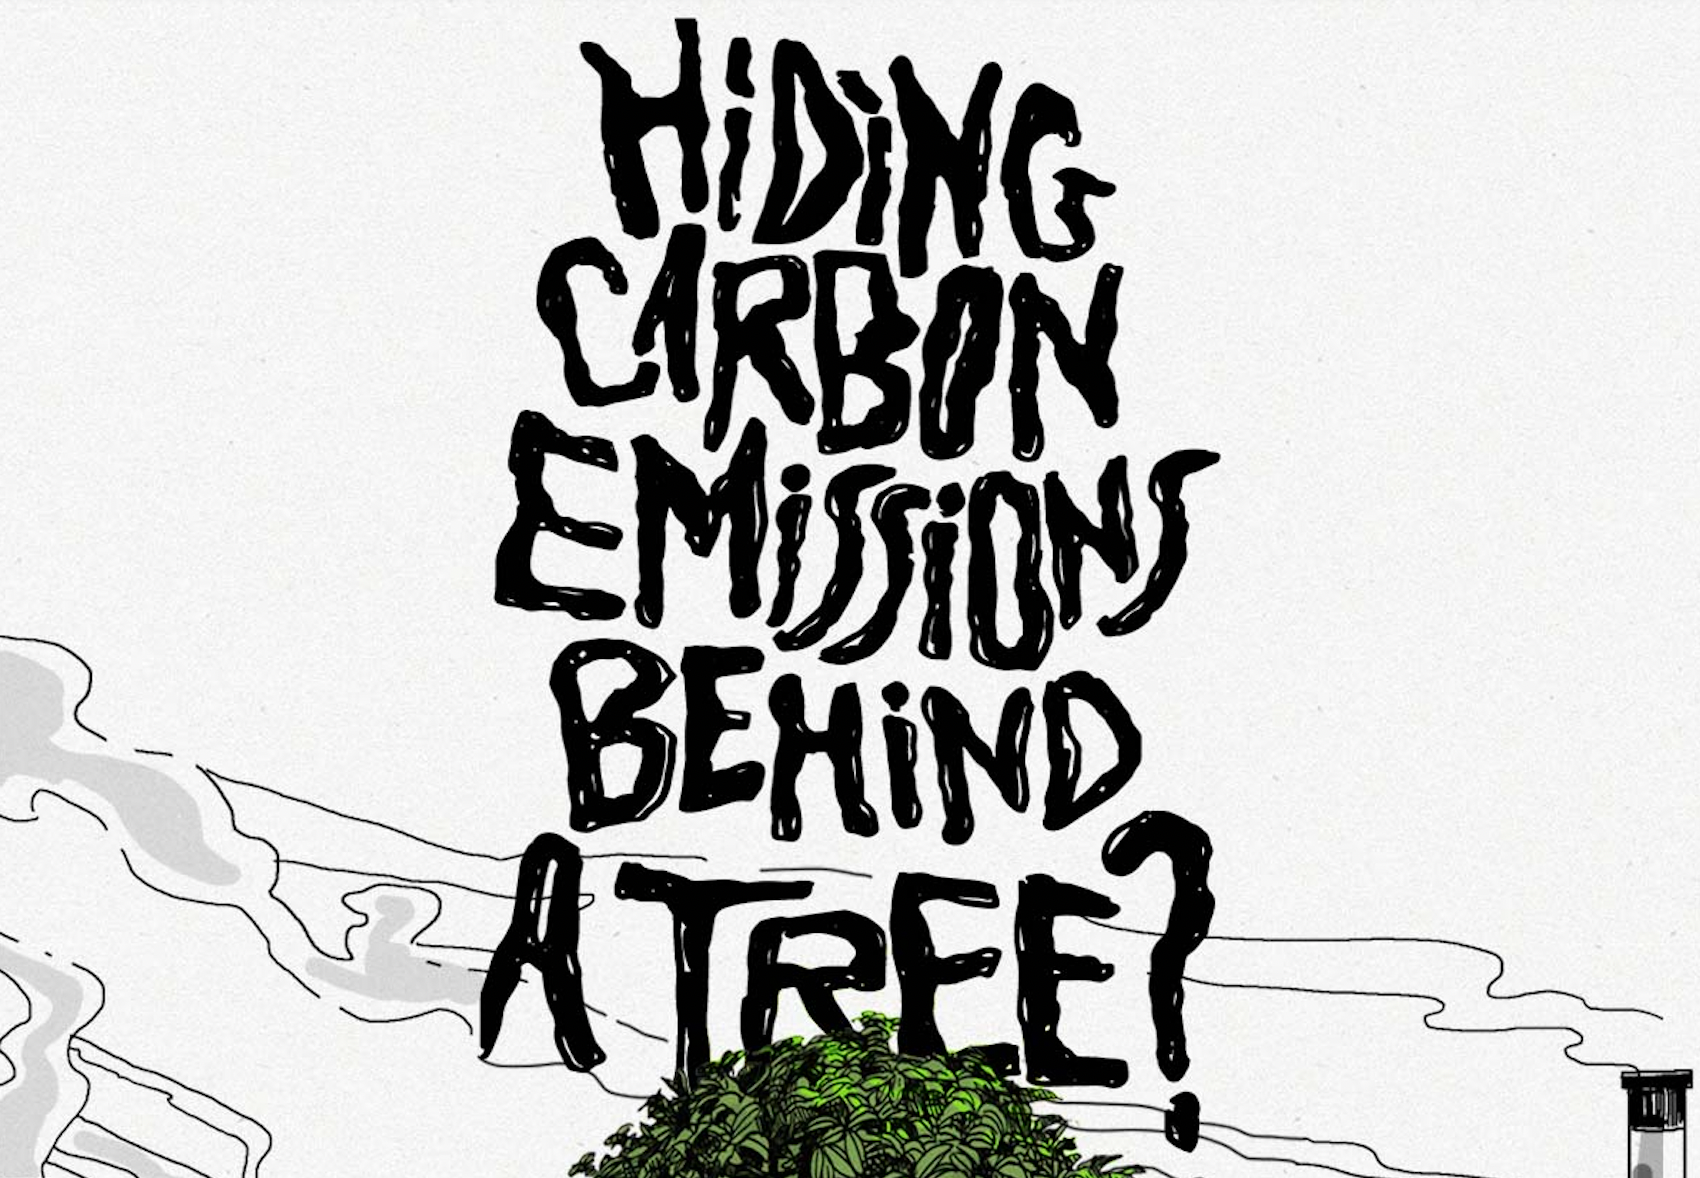 Hiding Carbon Emissions